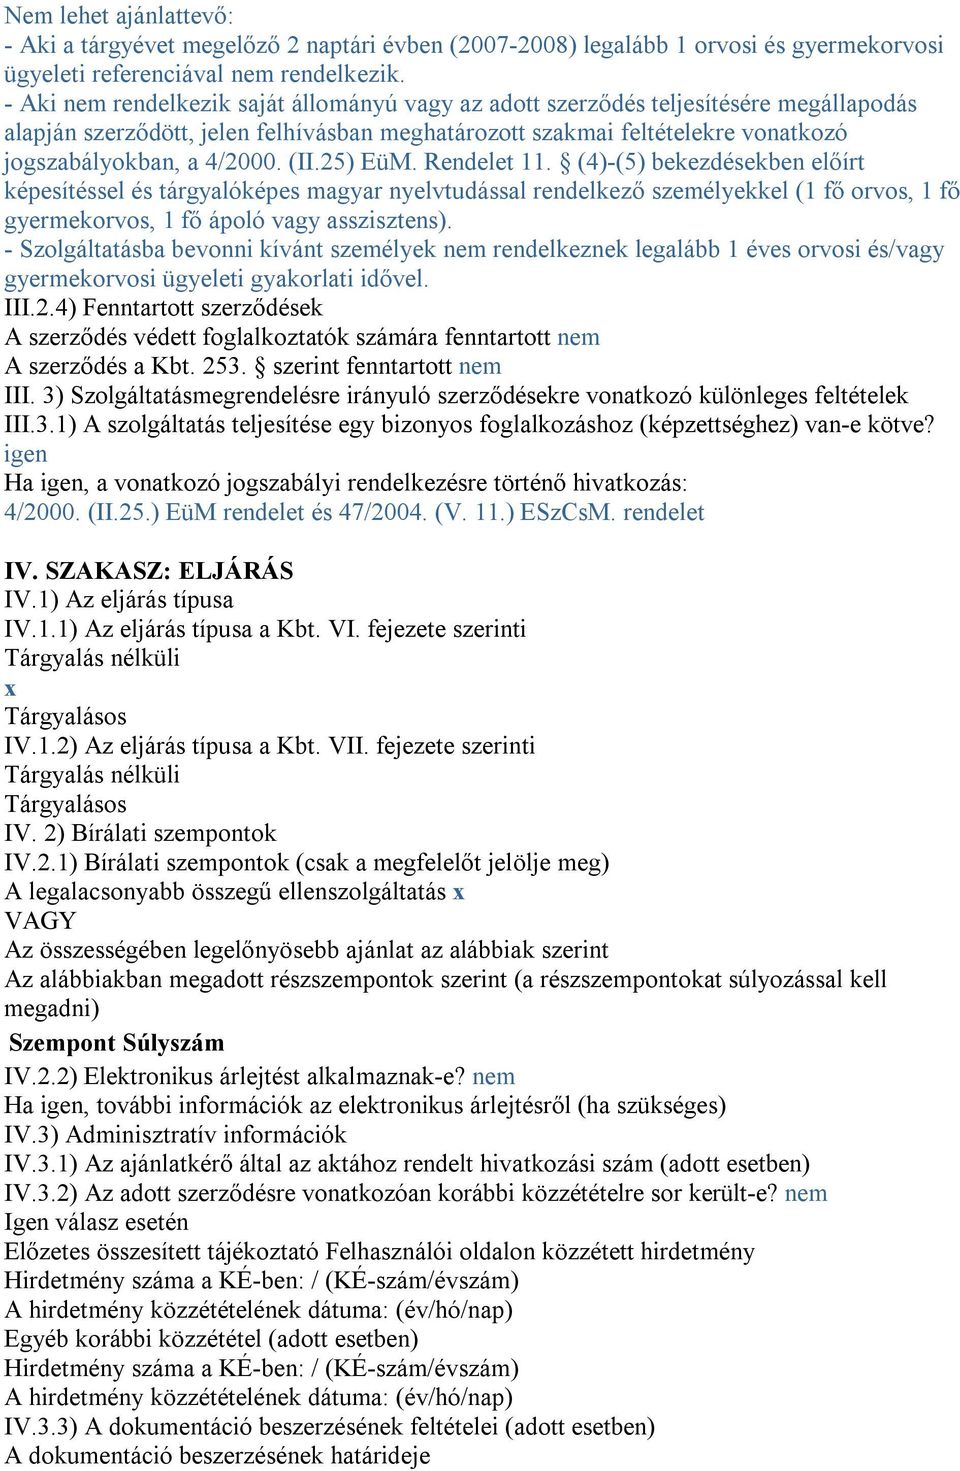 (II.25) EüM. Rendelet 11. (4)-(5) bekezdésekben előírt képesítéssel és tárgyalóképes magyar nyelvtudással rendelkező személyekkel (1 fő orvos, 1 fő gyermekorvos, 1 fő ápoló vagy asszisztens).